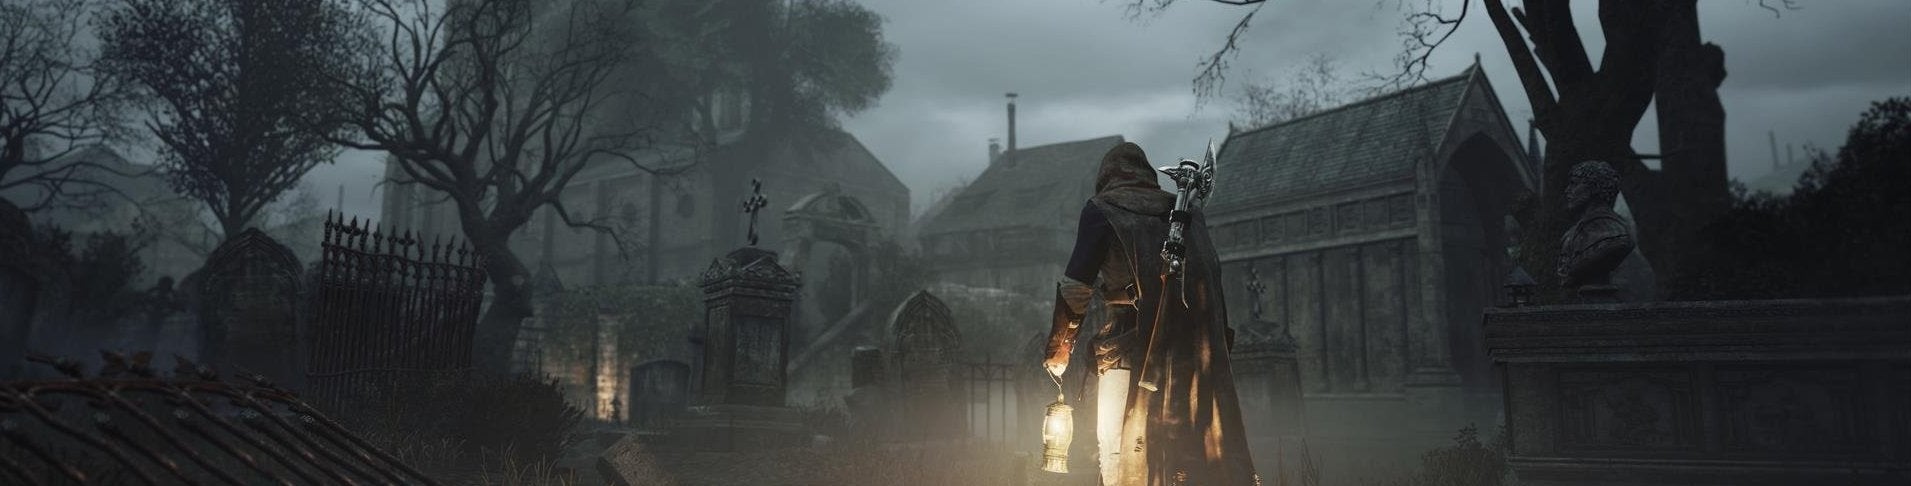 Afbeeldingen van Releasedatum Assassin's Creed Unity - Dead Kings bekend